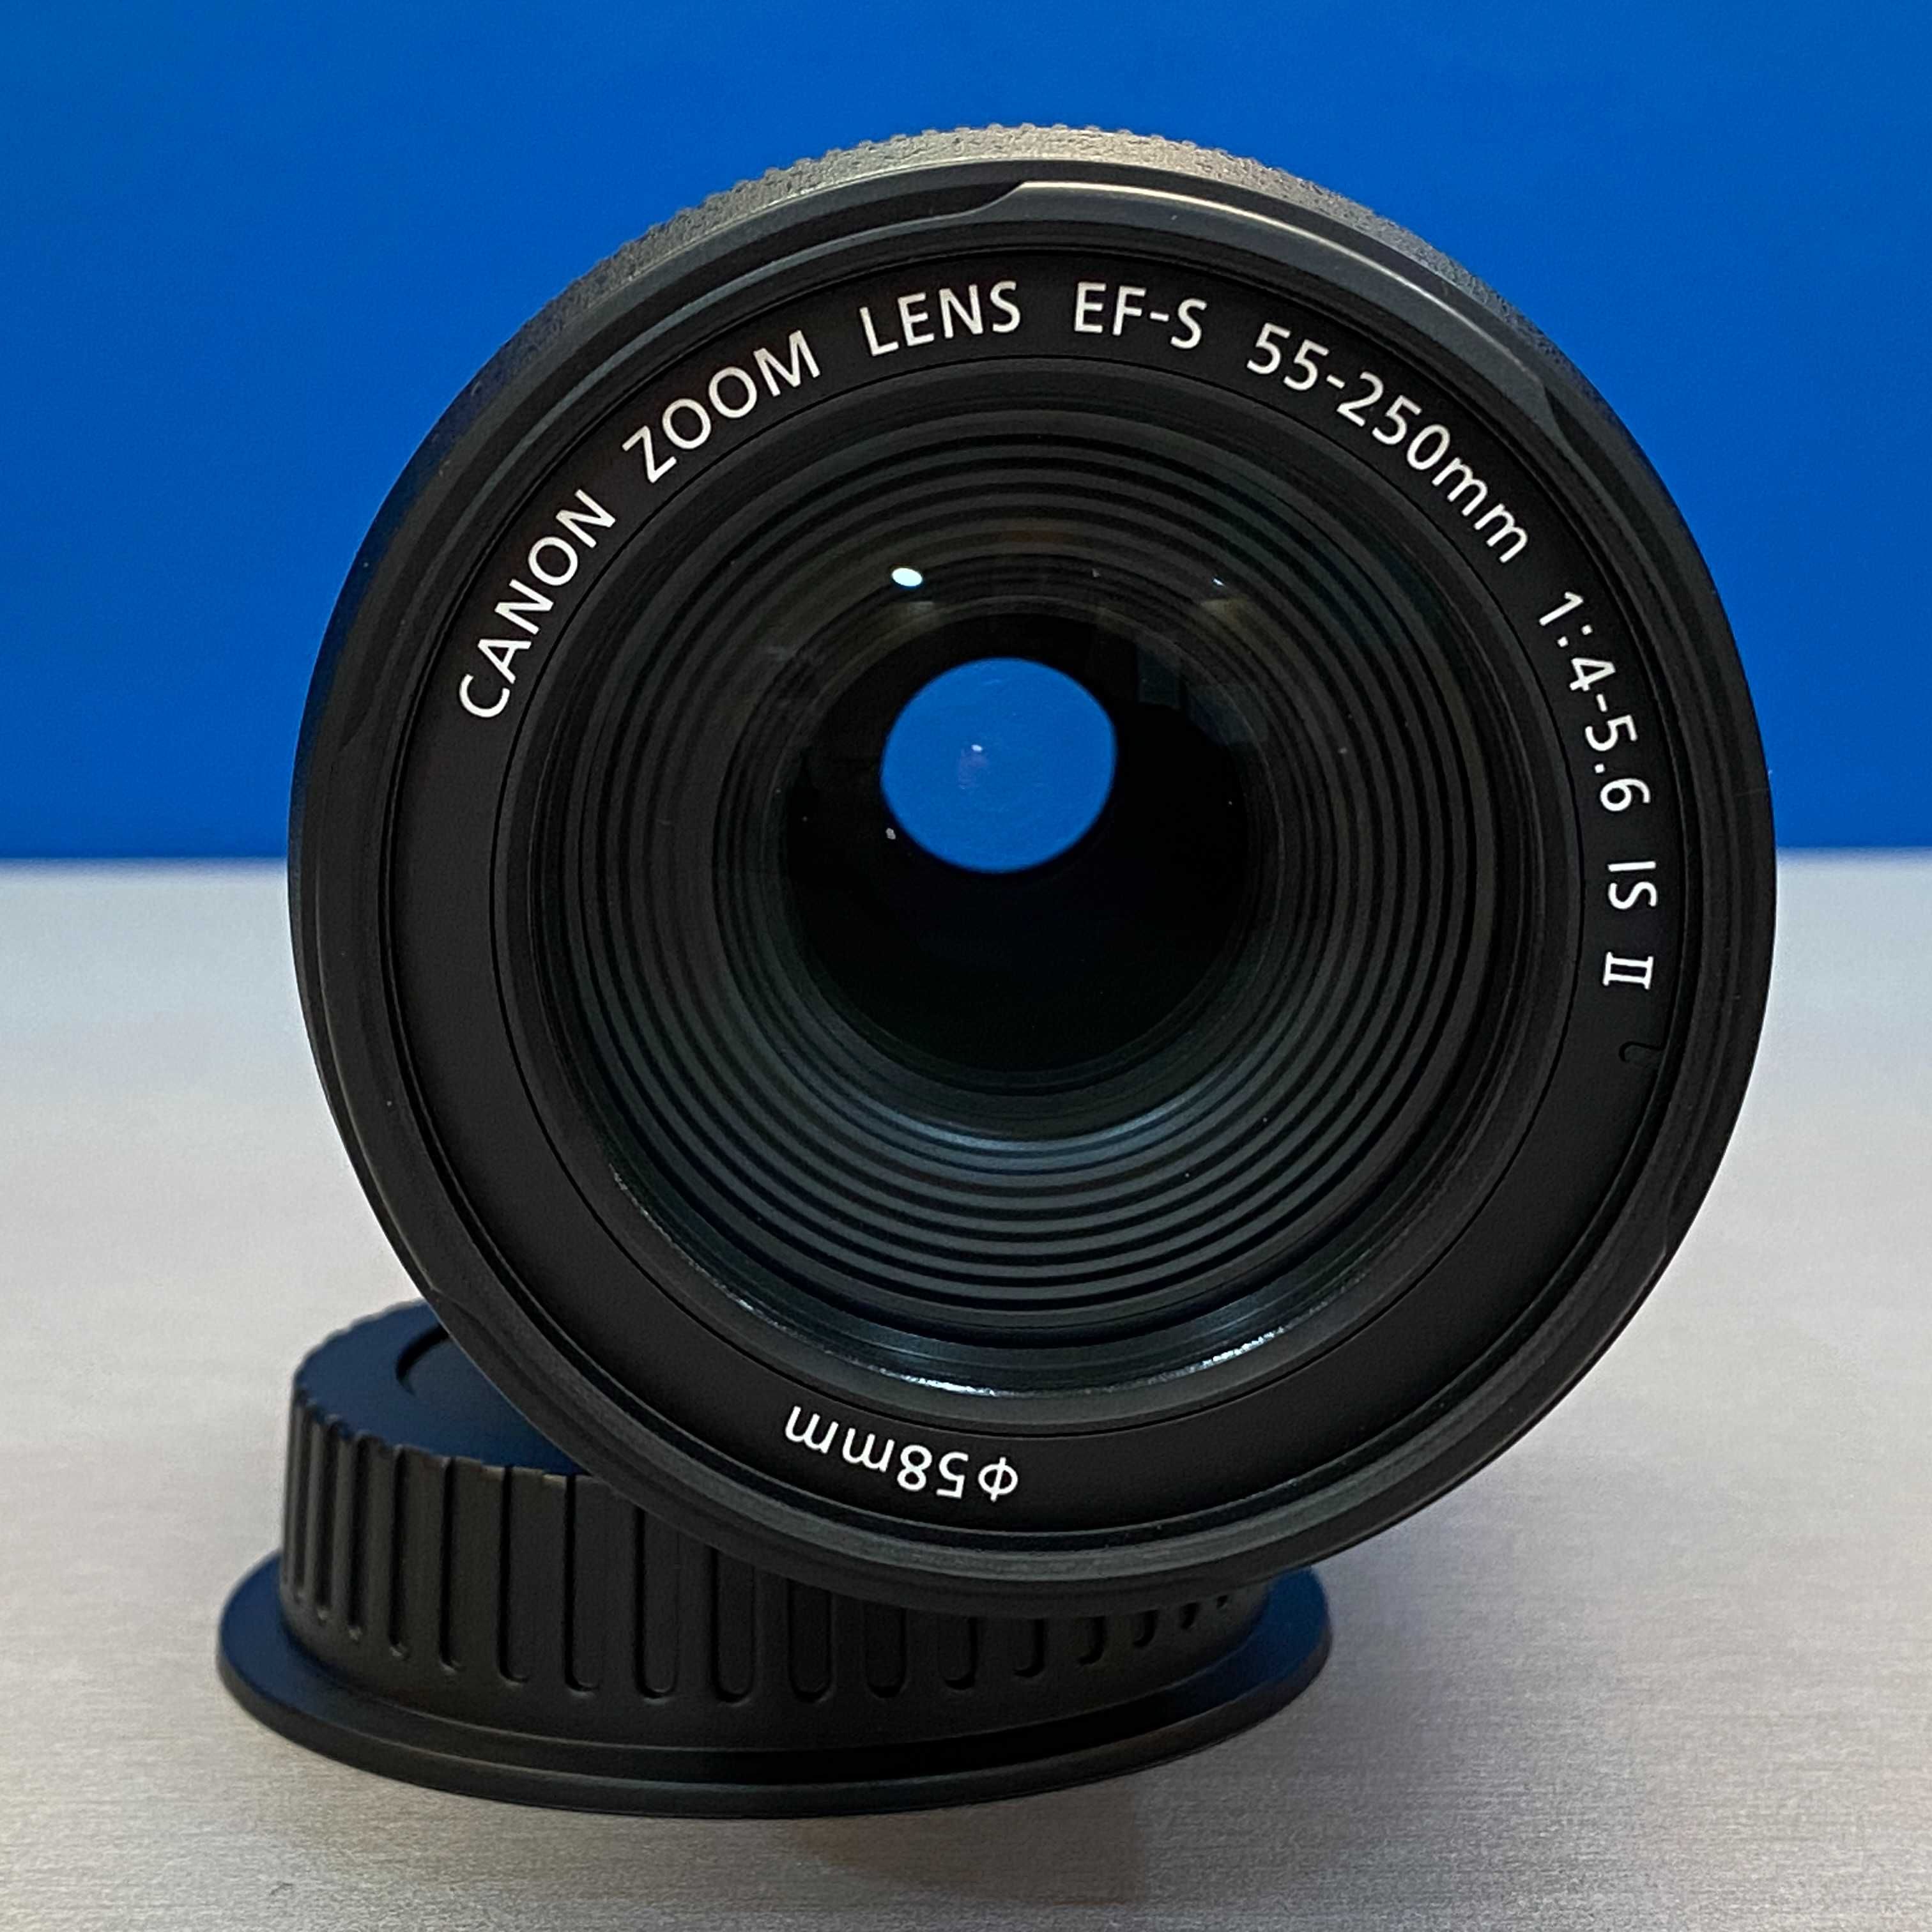 Canon EF-S 55-250mm f/4-5.6 IS II